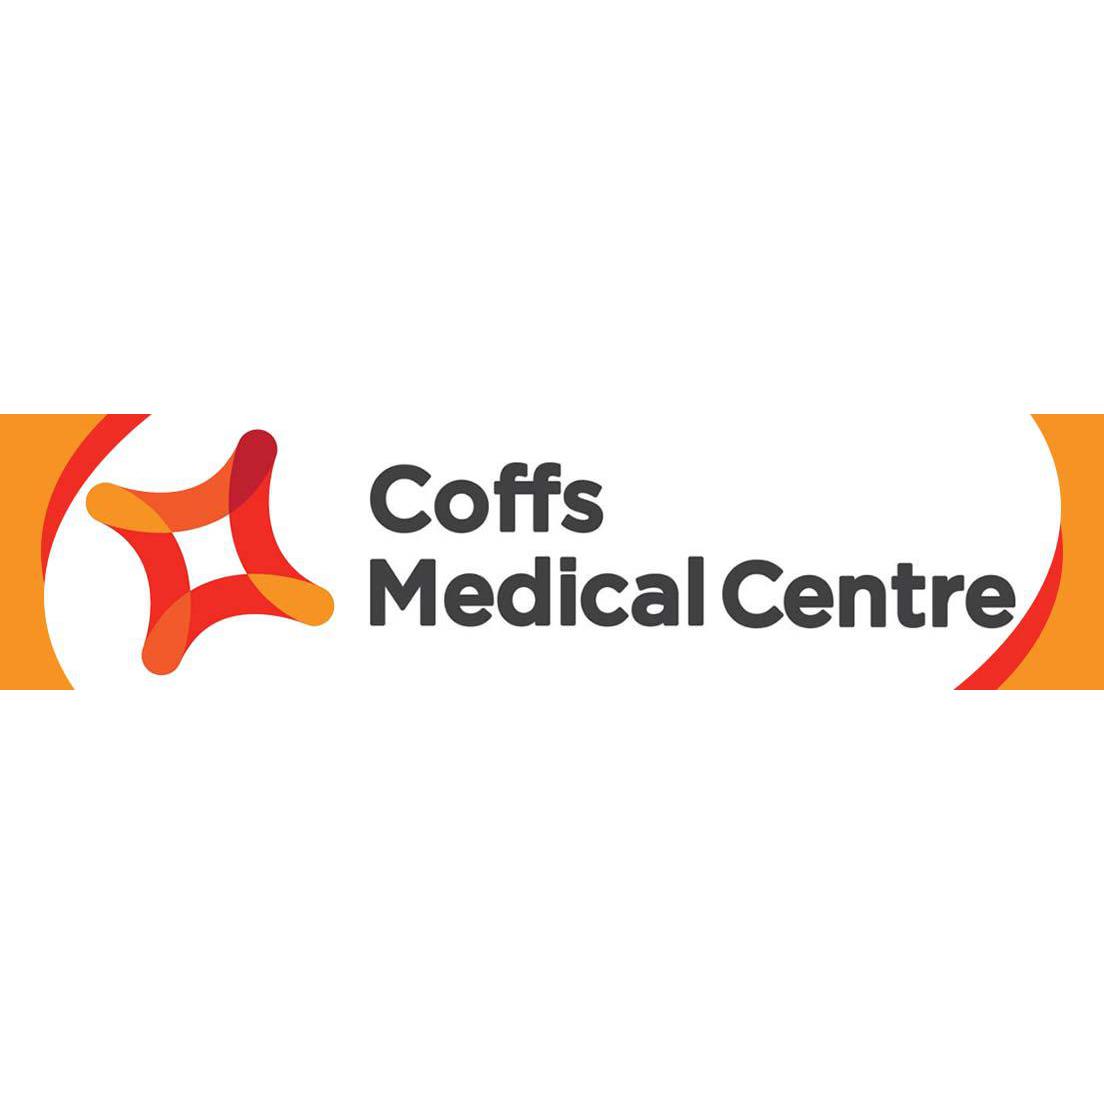 Coffs Medical Centre Coffs Harbour (02) 6648 5222